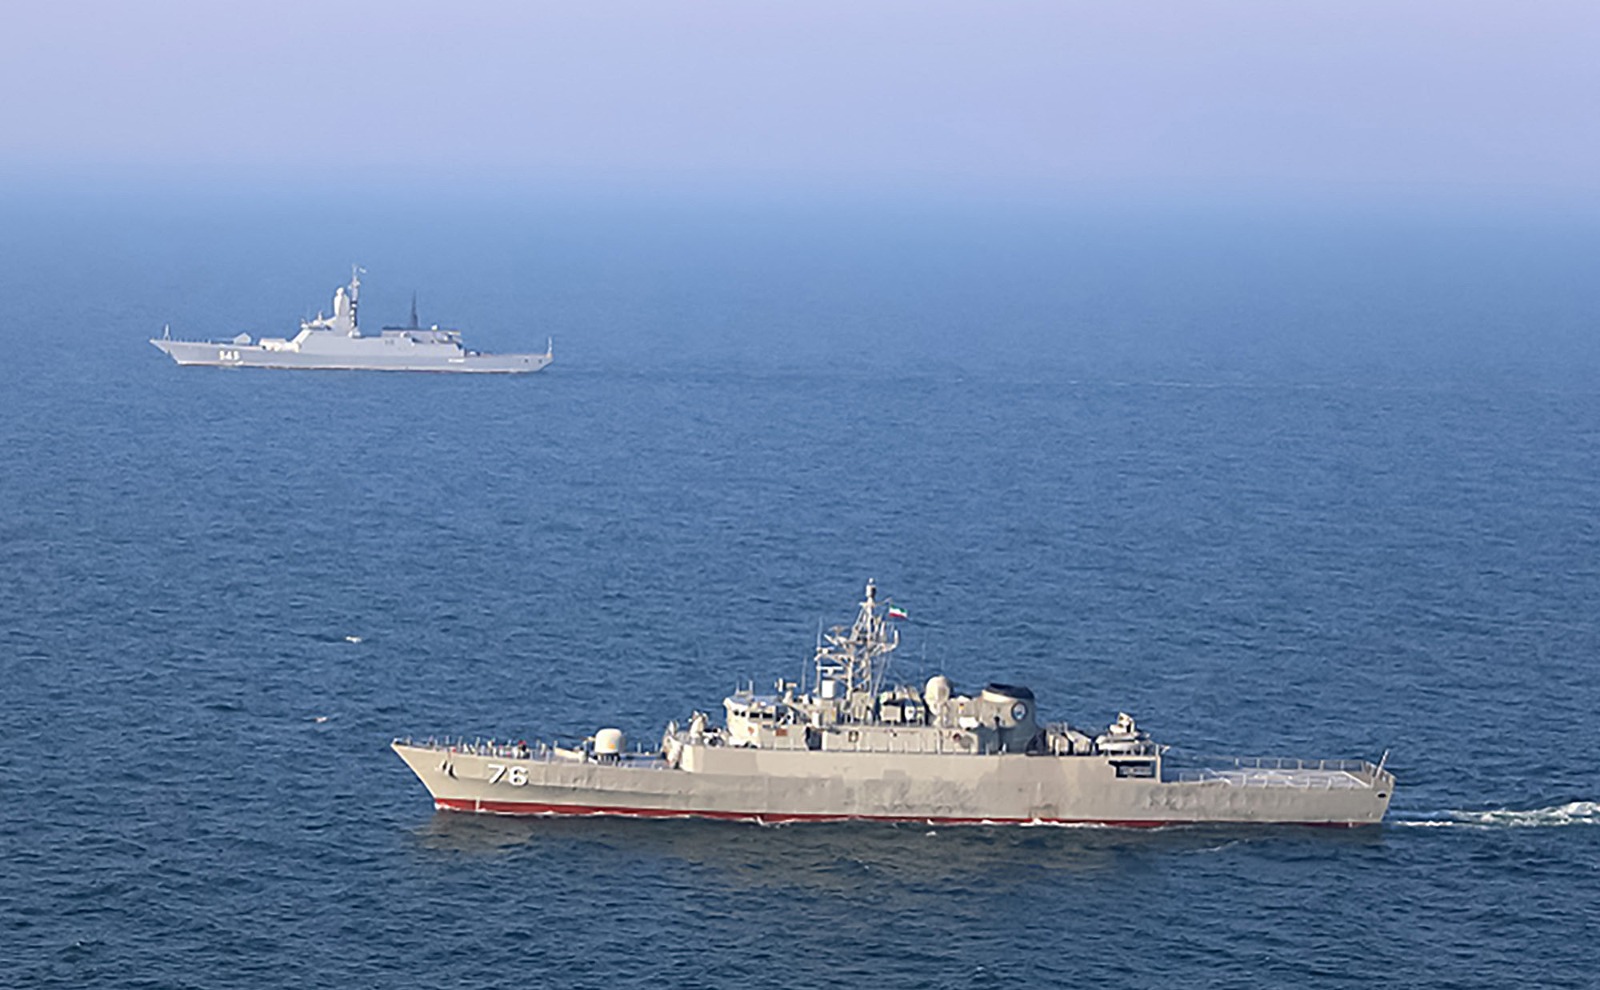 الفرقاطة "جمران" التابعة للبحرية الإيرانية تشارك في تدريبات مشتركة مع البحرية الروسية في المحيط الهندي. 16 فبراير 2021 - AFP